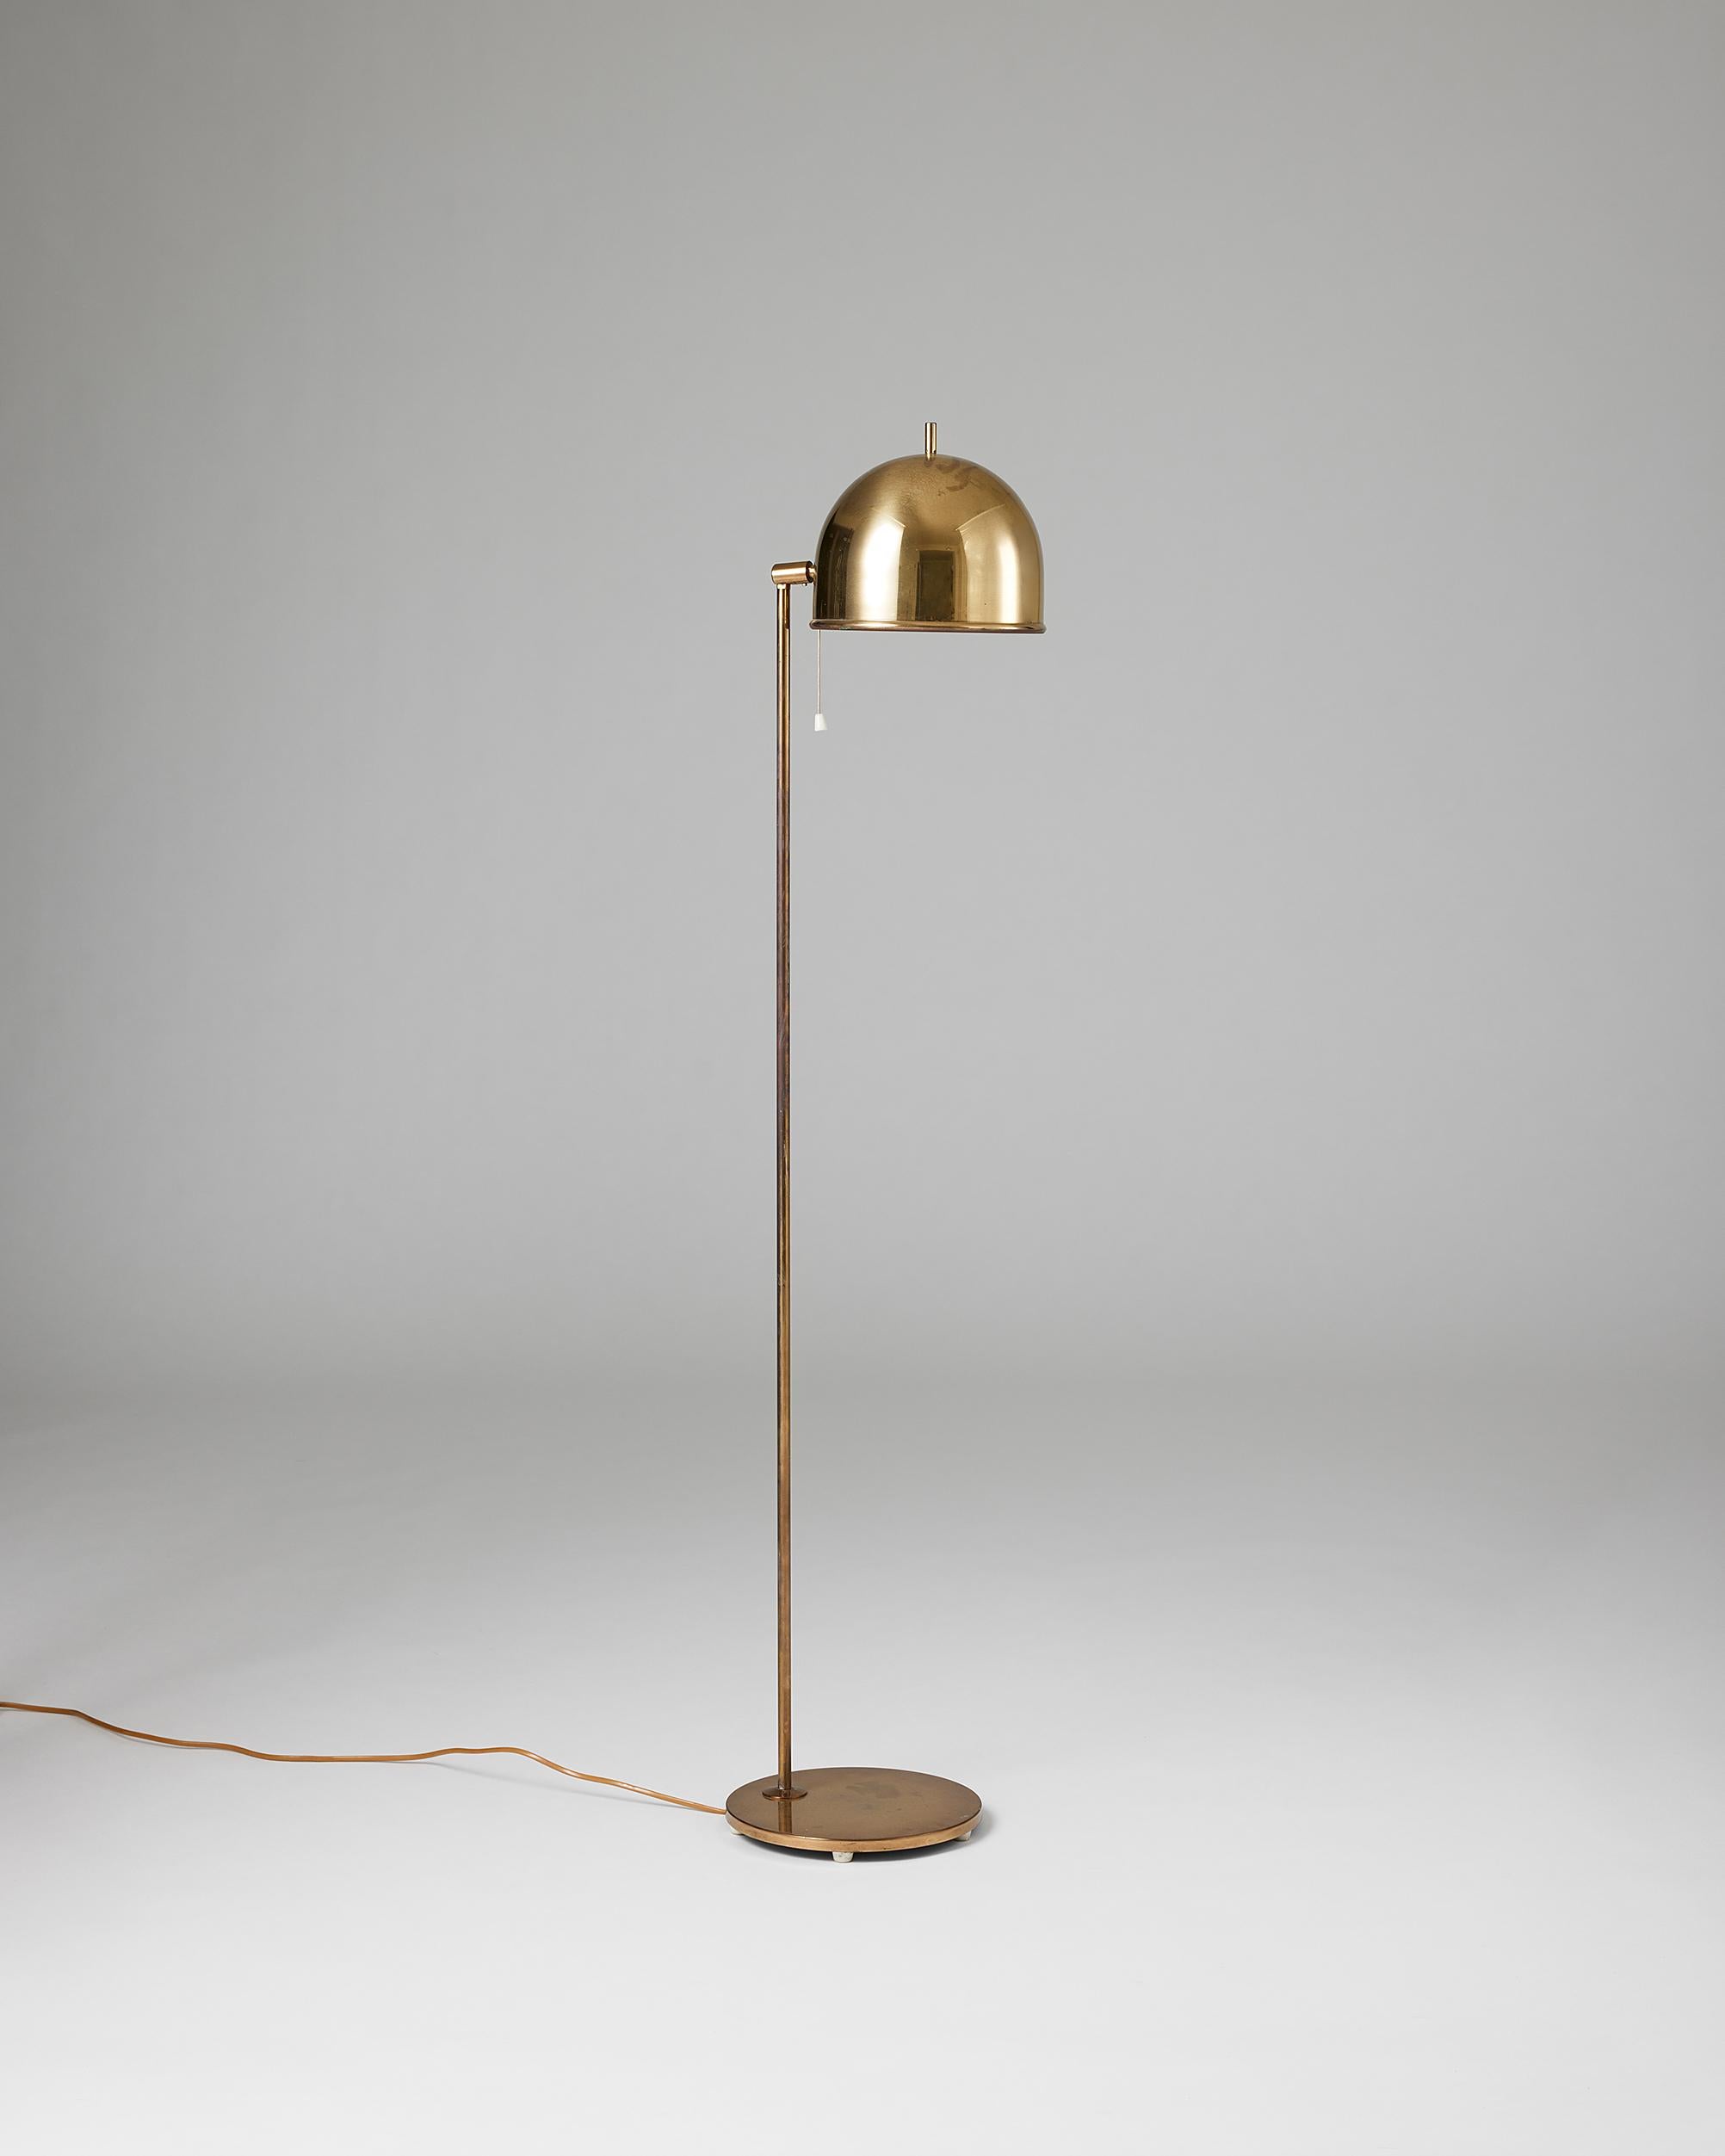 Floor lamp model G-075 designed by Eje Ahlgren for Bergboms,
Sweden, 1960s.

Brass.

Stamped.

H: 125 cm
W: 23 cm
D: 28 cm